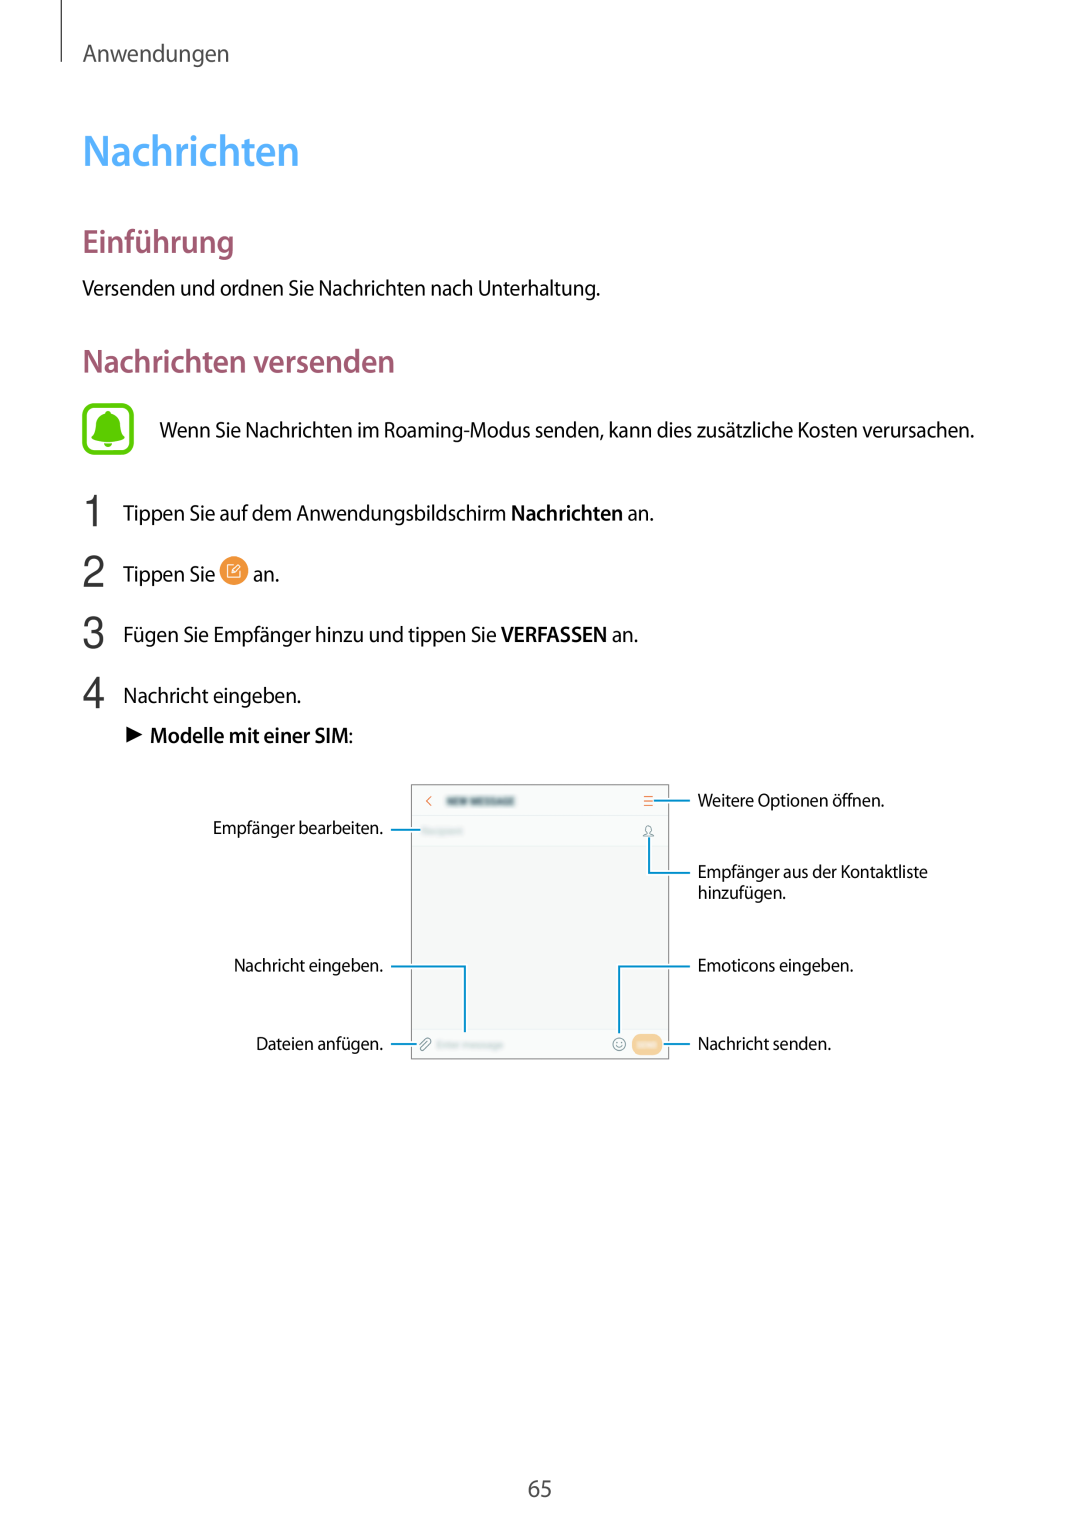 Samsung SM-J530FZSDDBT manual Nachrichten versenden, Einführung, Anwendungen, Modelle mit einer SIM, Nachricht eingeben 